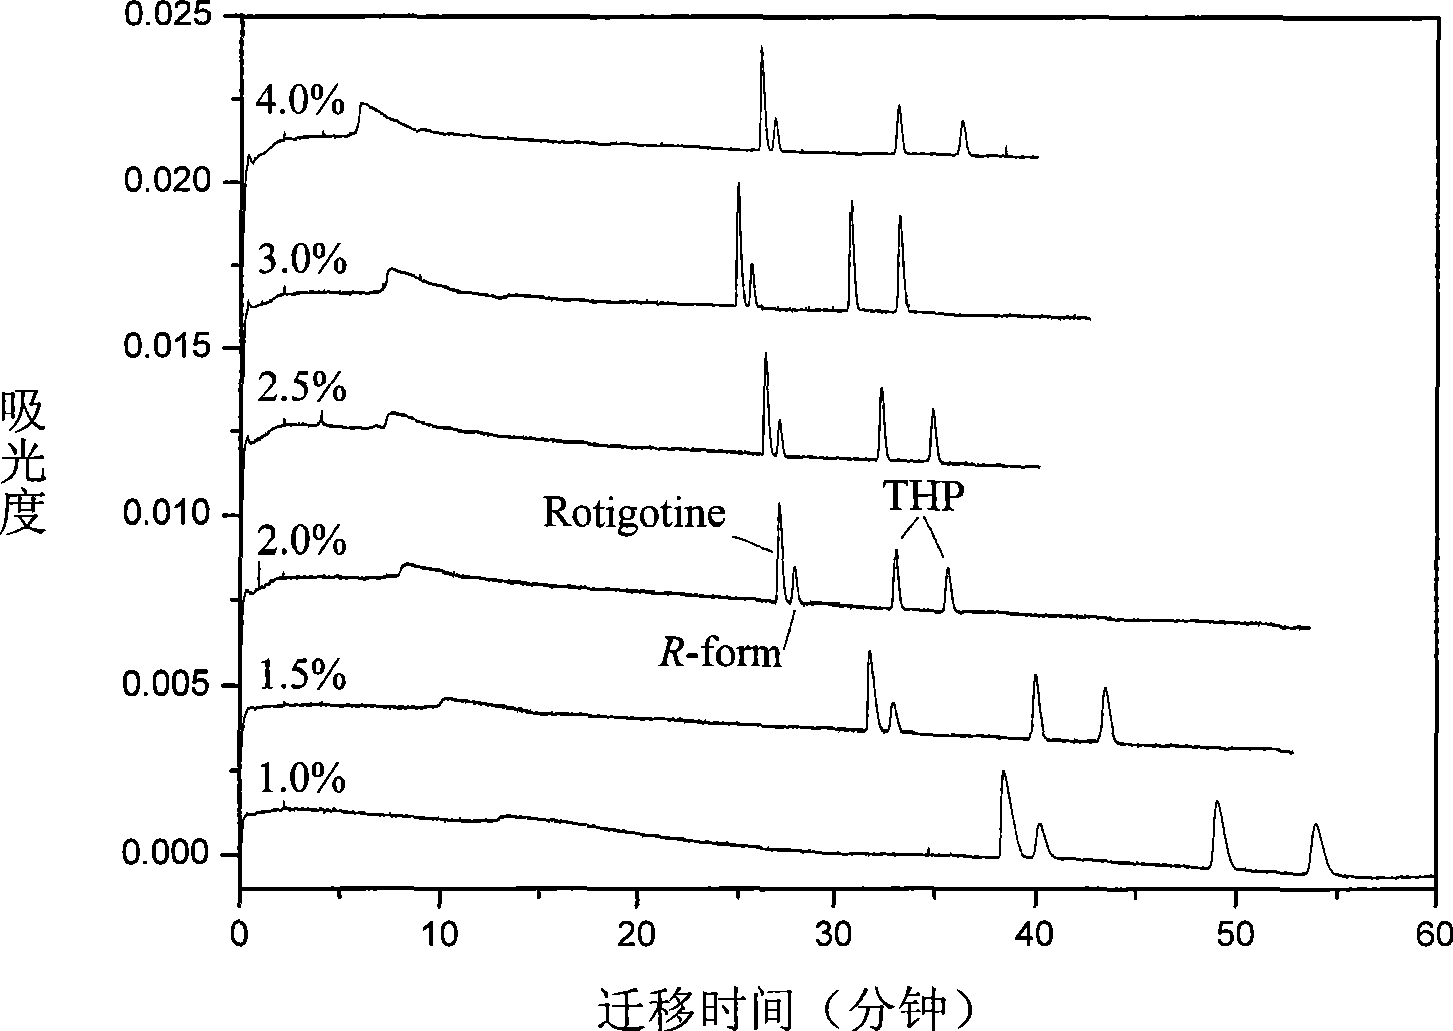 Method for separating enantiomers of rotigotine and trihexyphenidyl